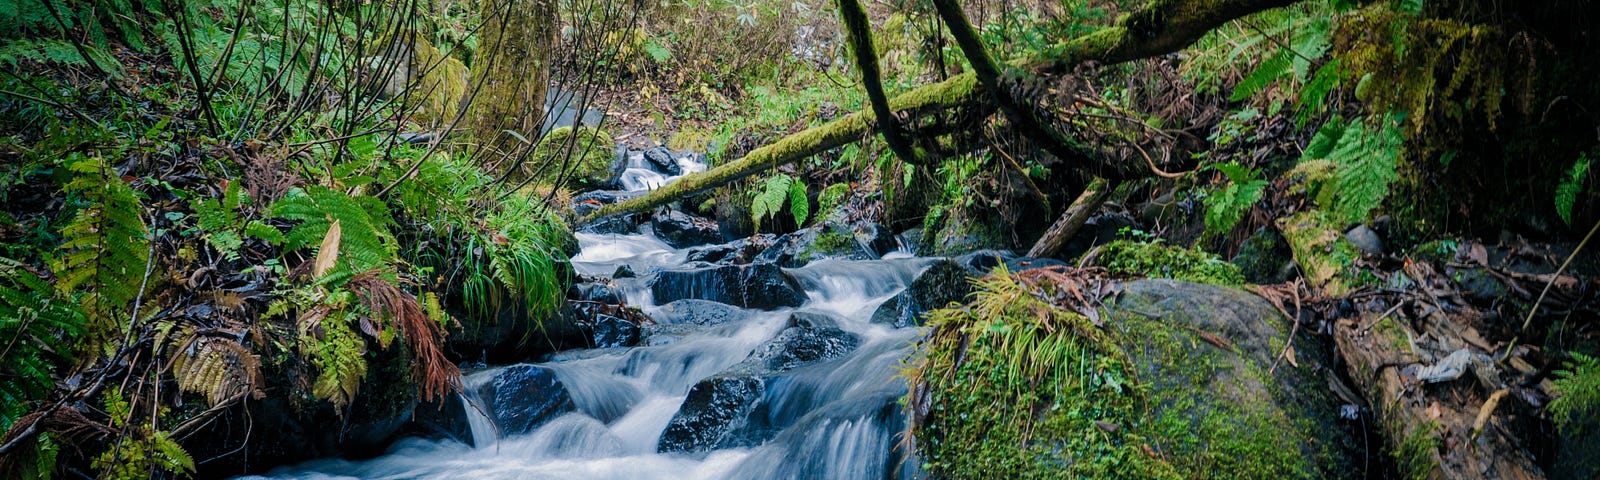 Ein flacher mehrstufiger Wasserfall im Wald